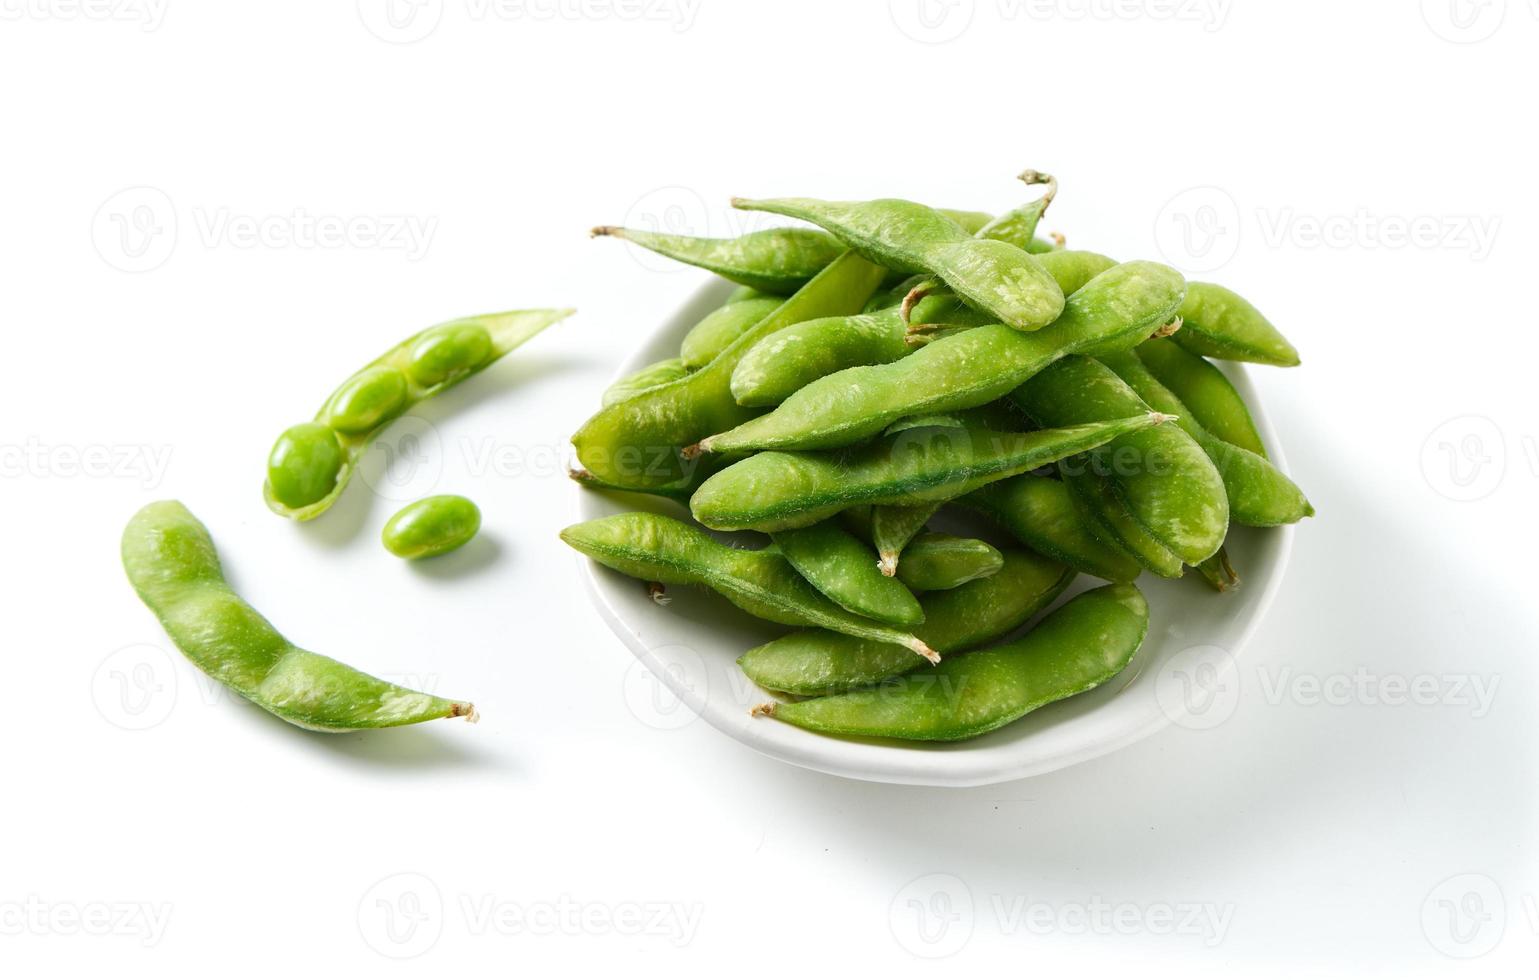 groene sojabonen op witte achtergrond foto